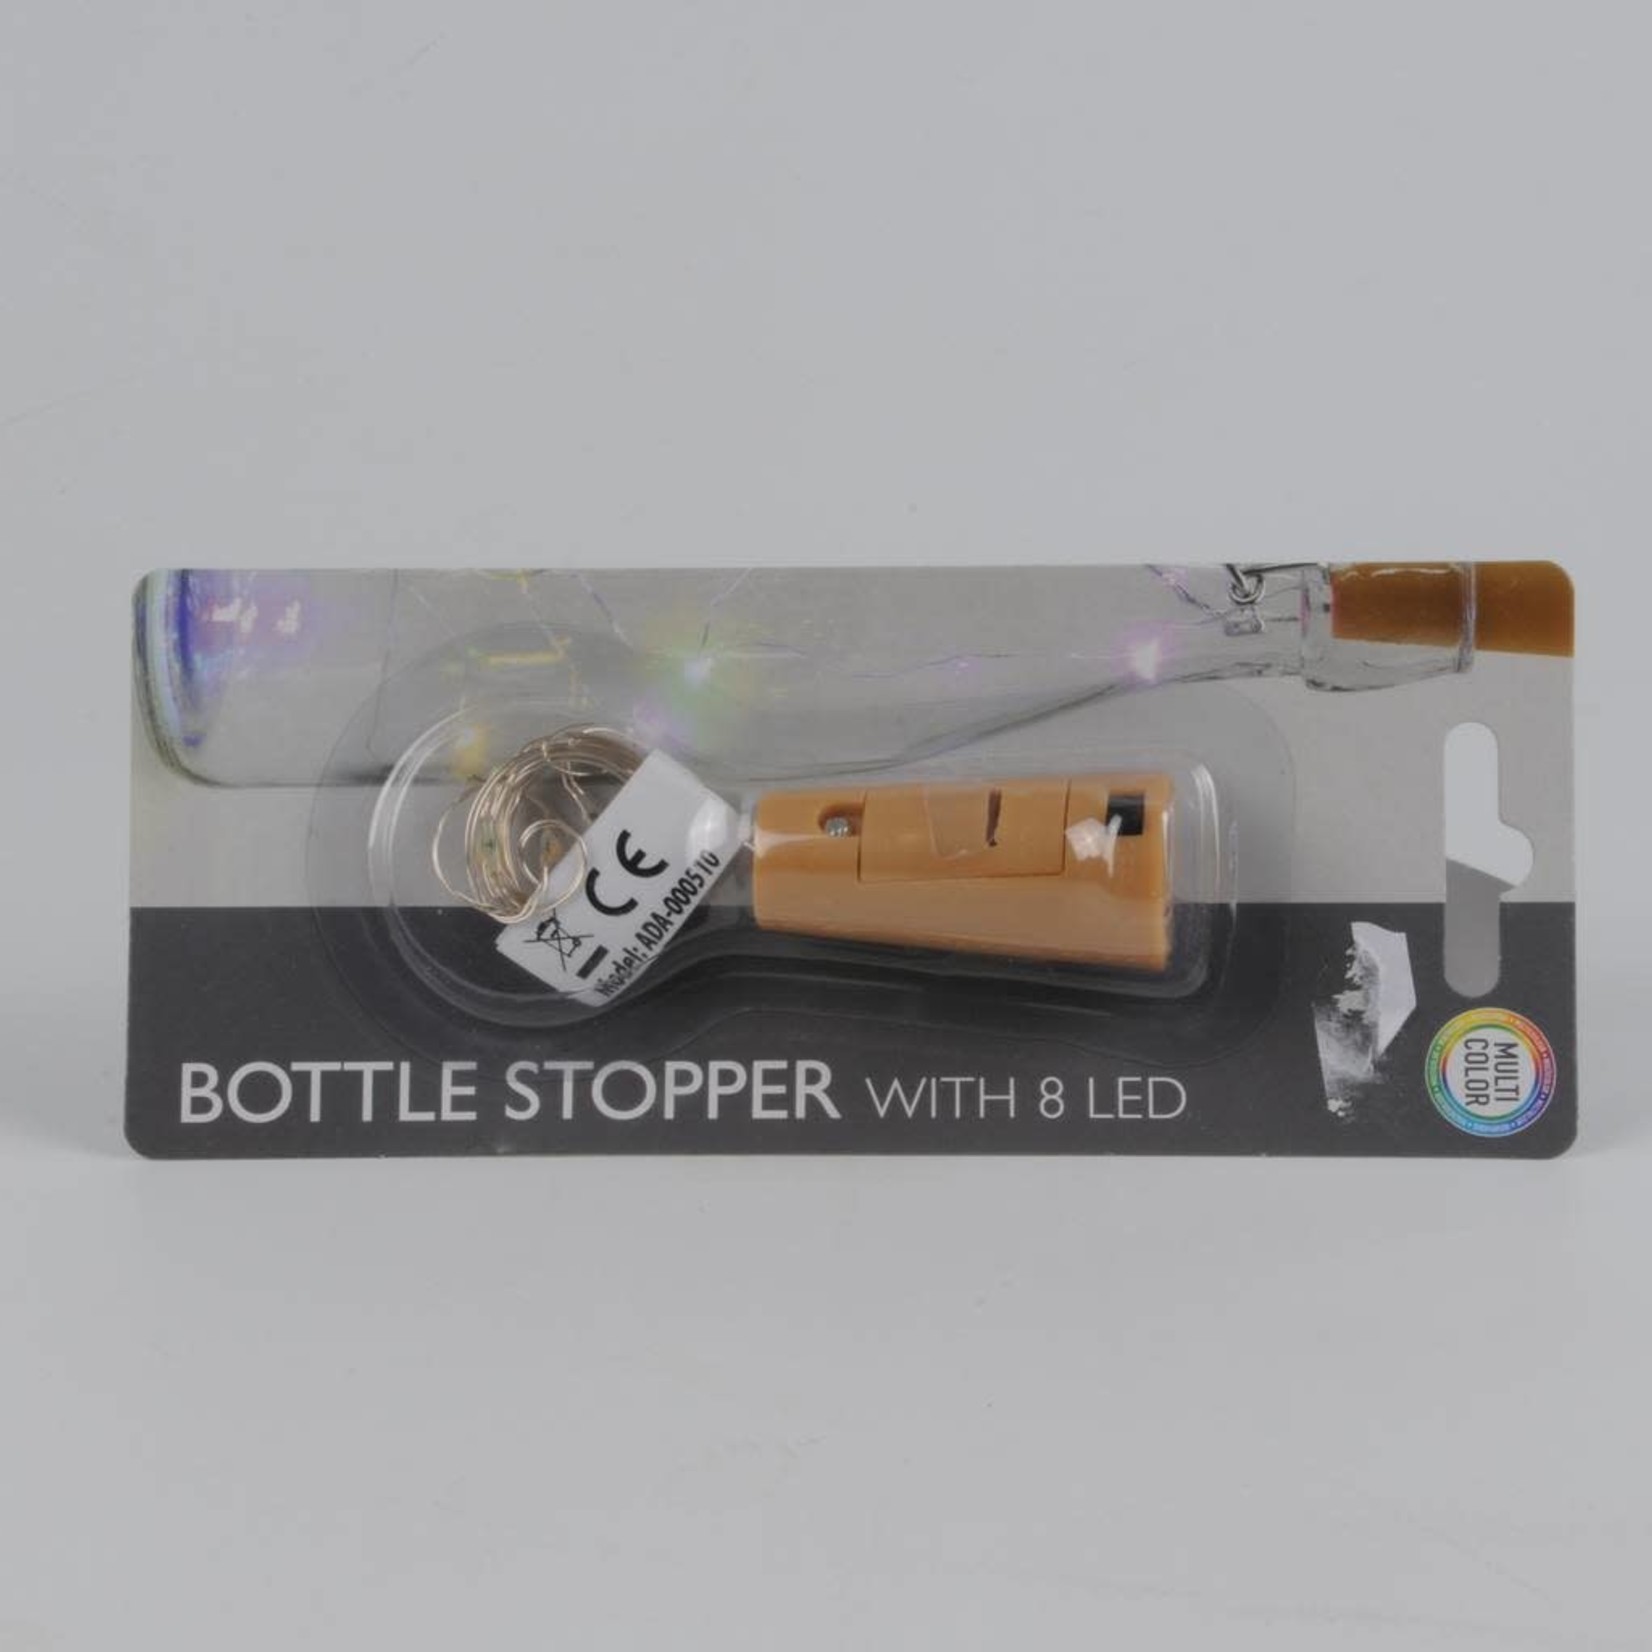 Bottler Stopper With 8 Led